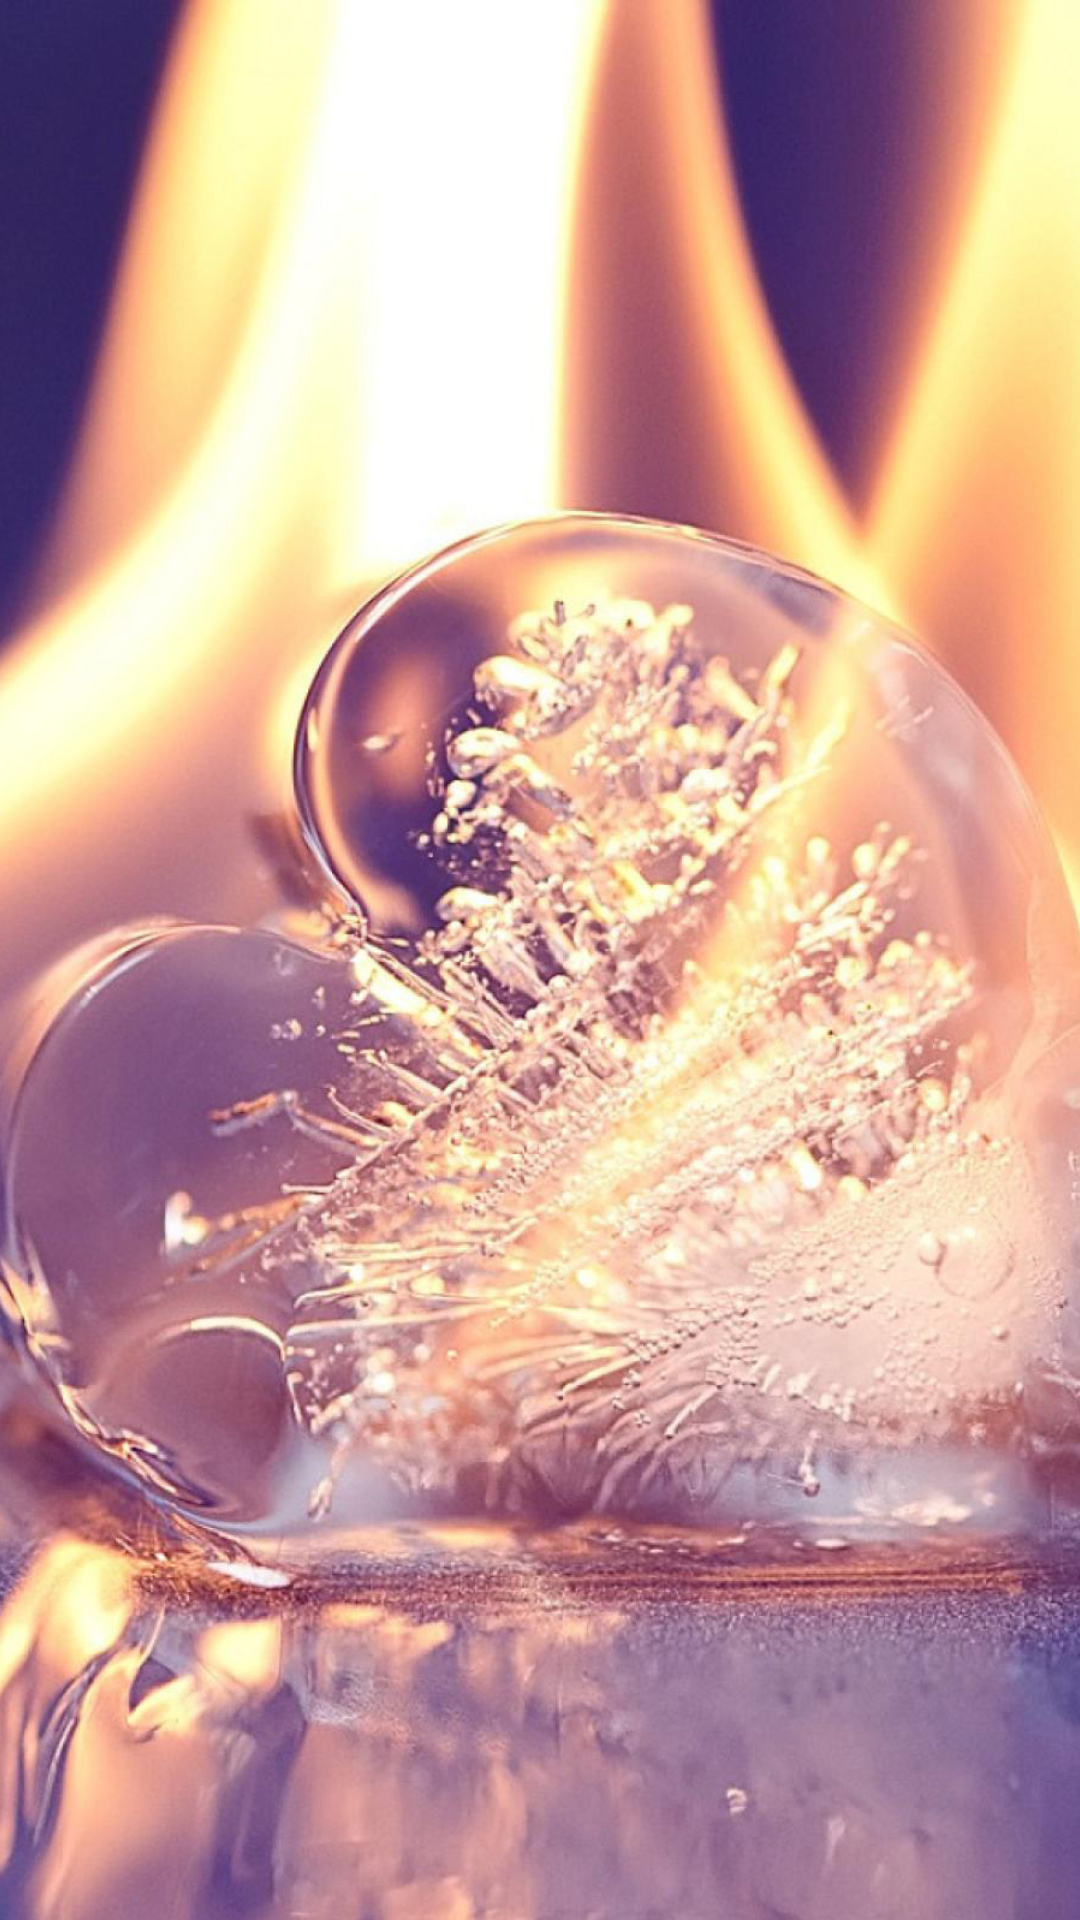 Обои Ice heart in fire 1080x1920